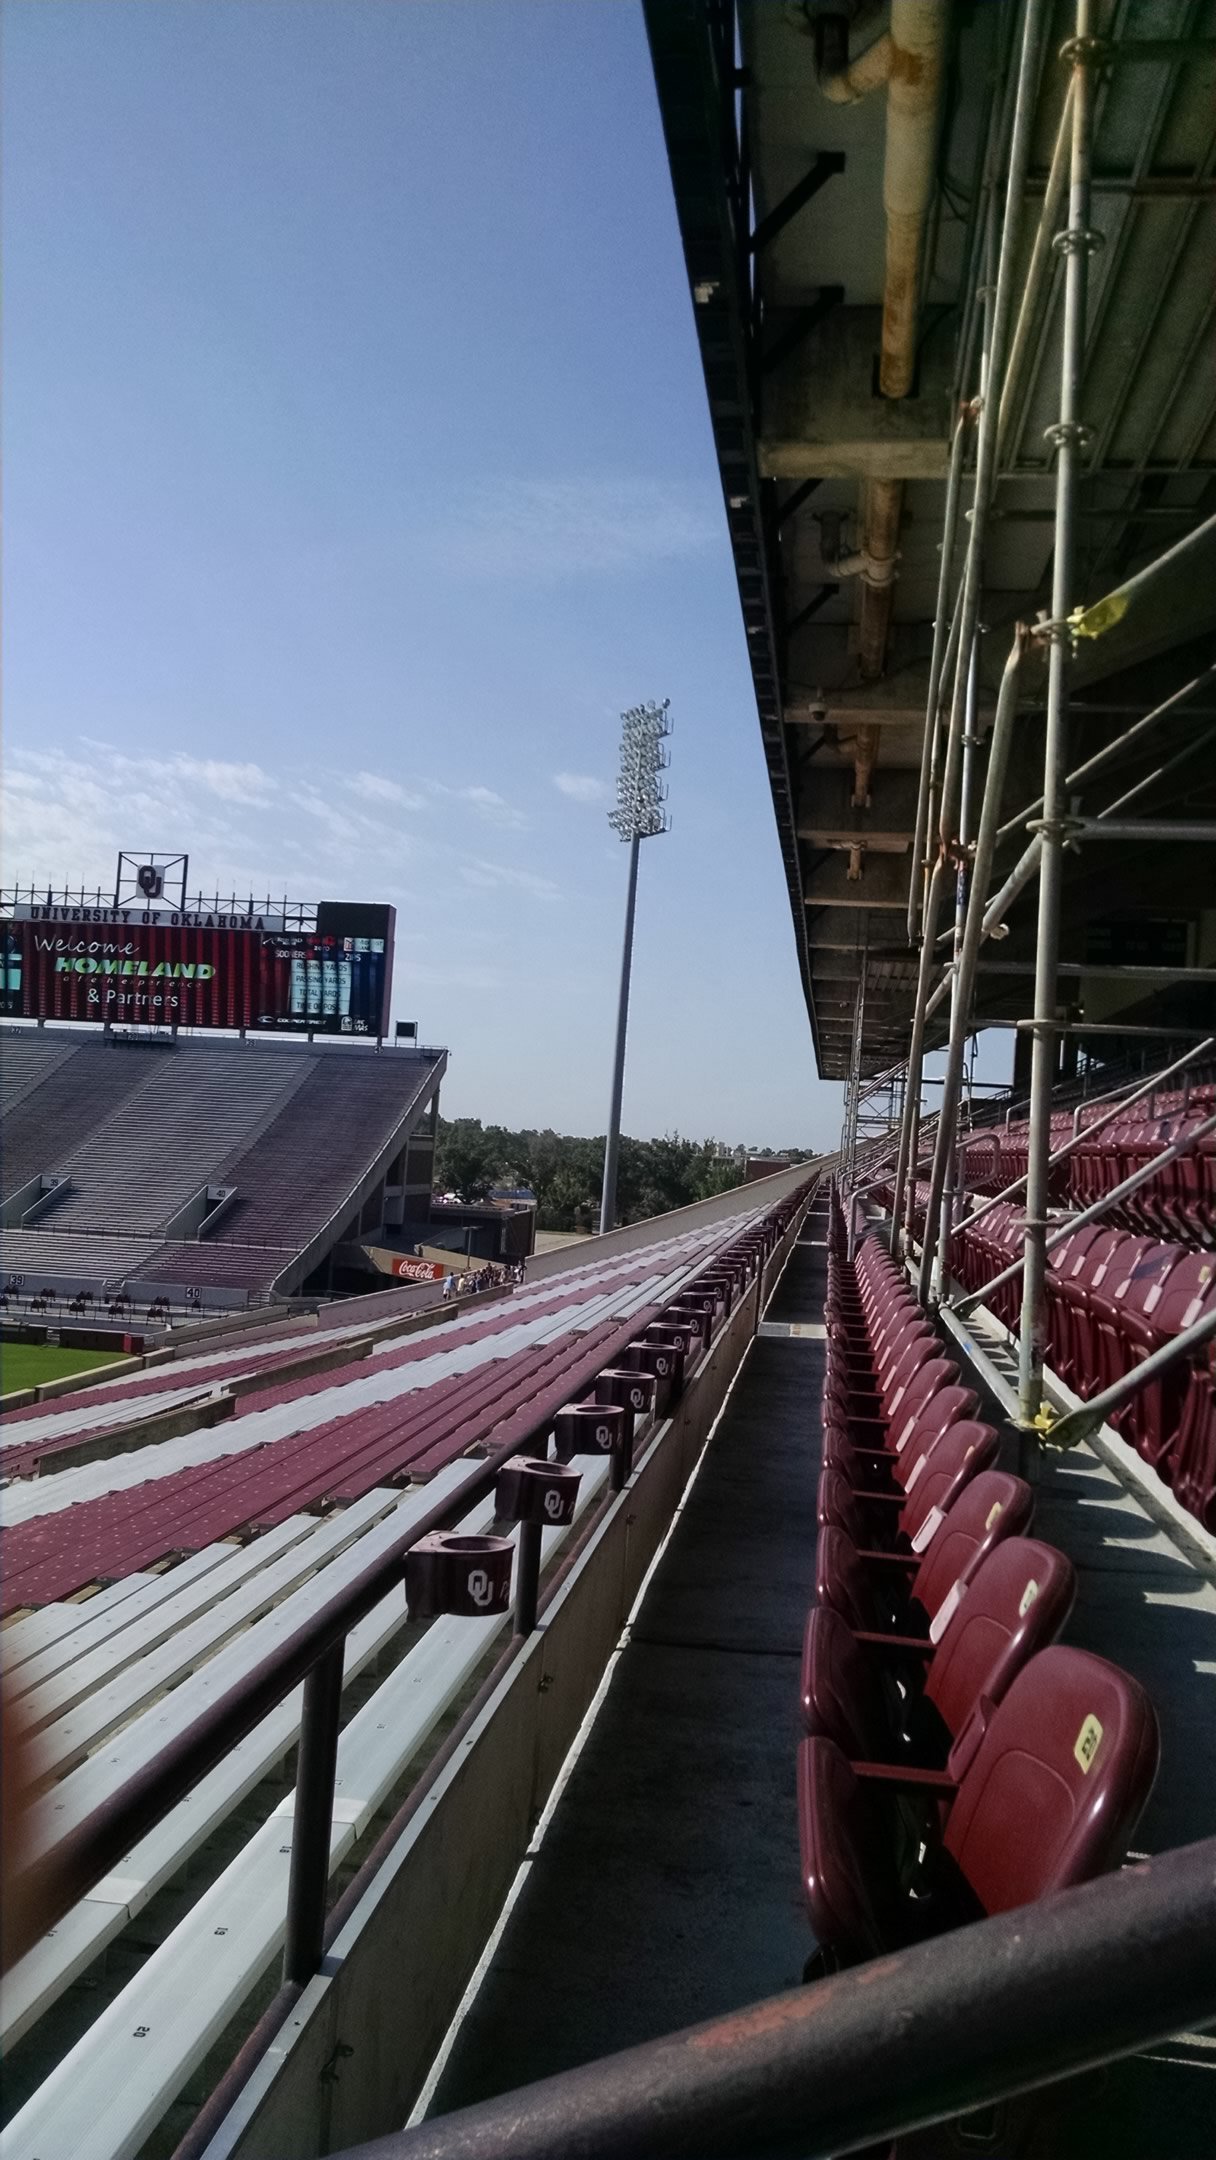 Oklahoma Sooners Football Stadium Seating Chart